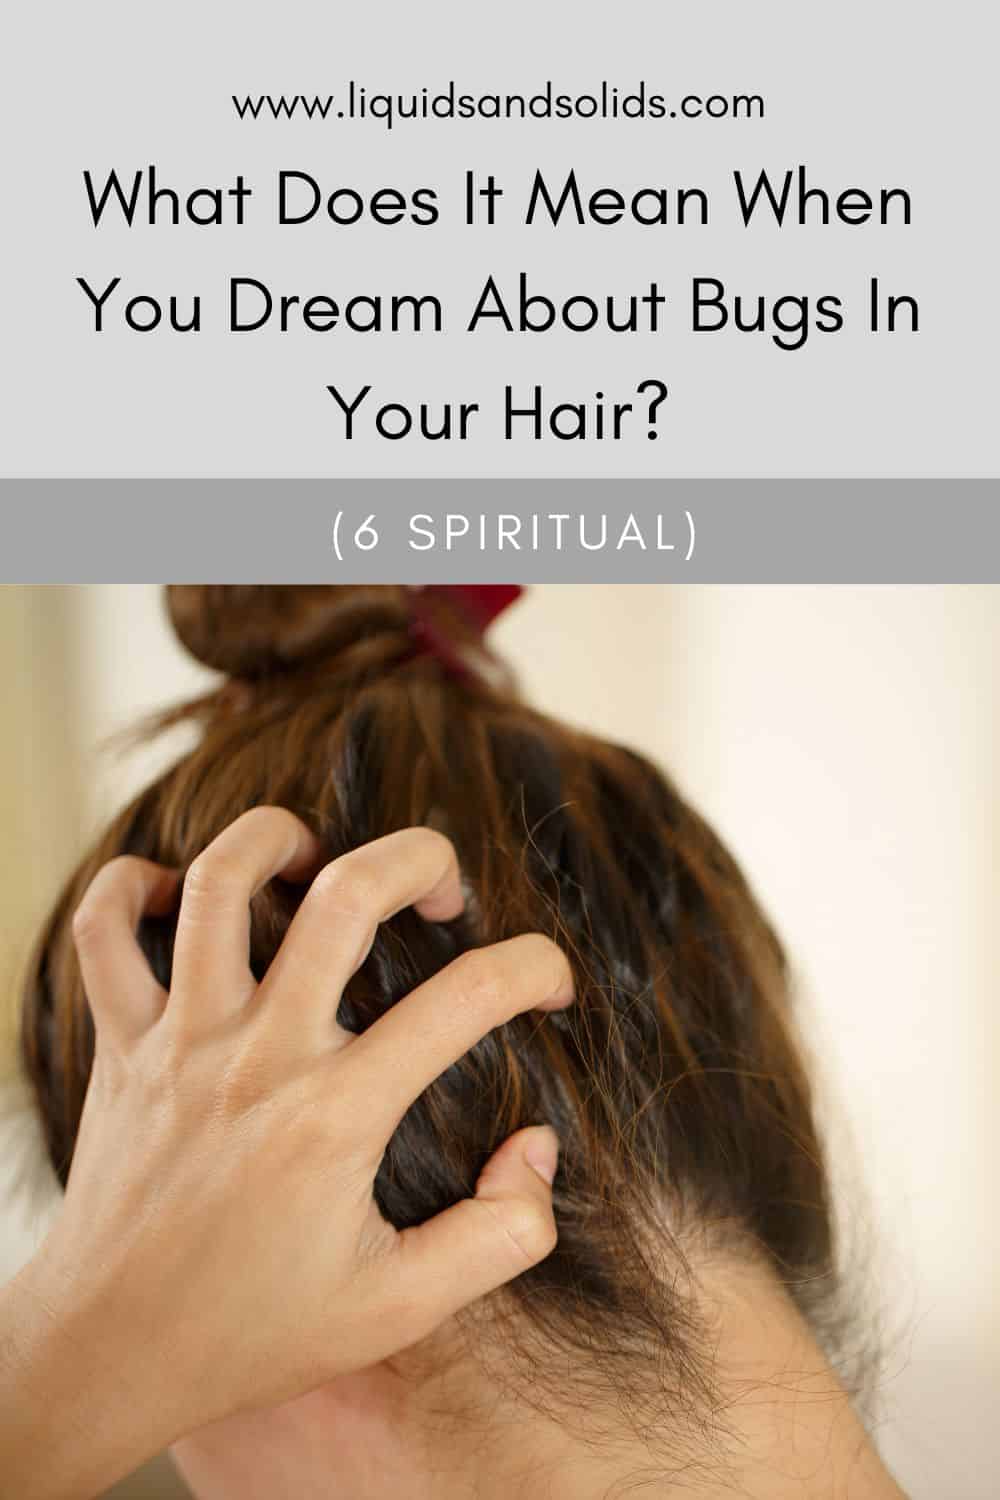  Insectes dans un rêve de cheveux (6 significations spirituelles)